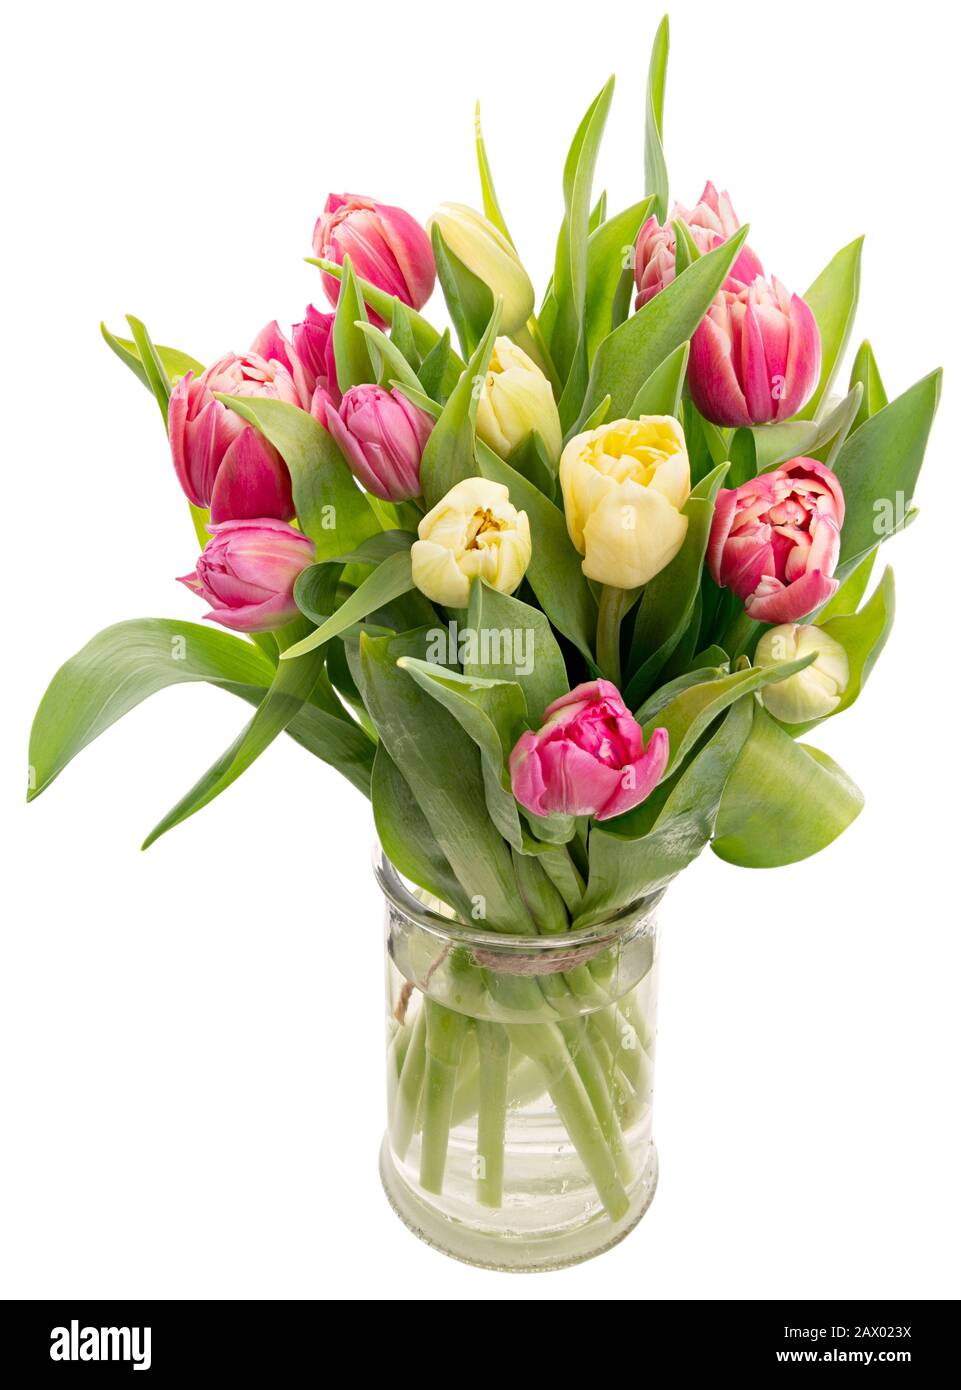 Schöne, frische, rosafarbene und gelbe Tulpen in einer Vase, isoliert auf weißem Hintergrund Stockfoto